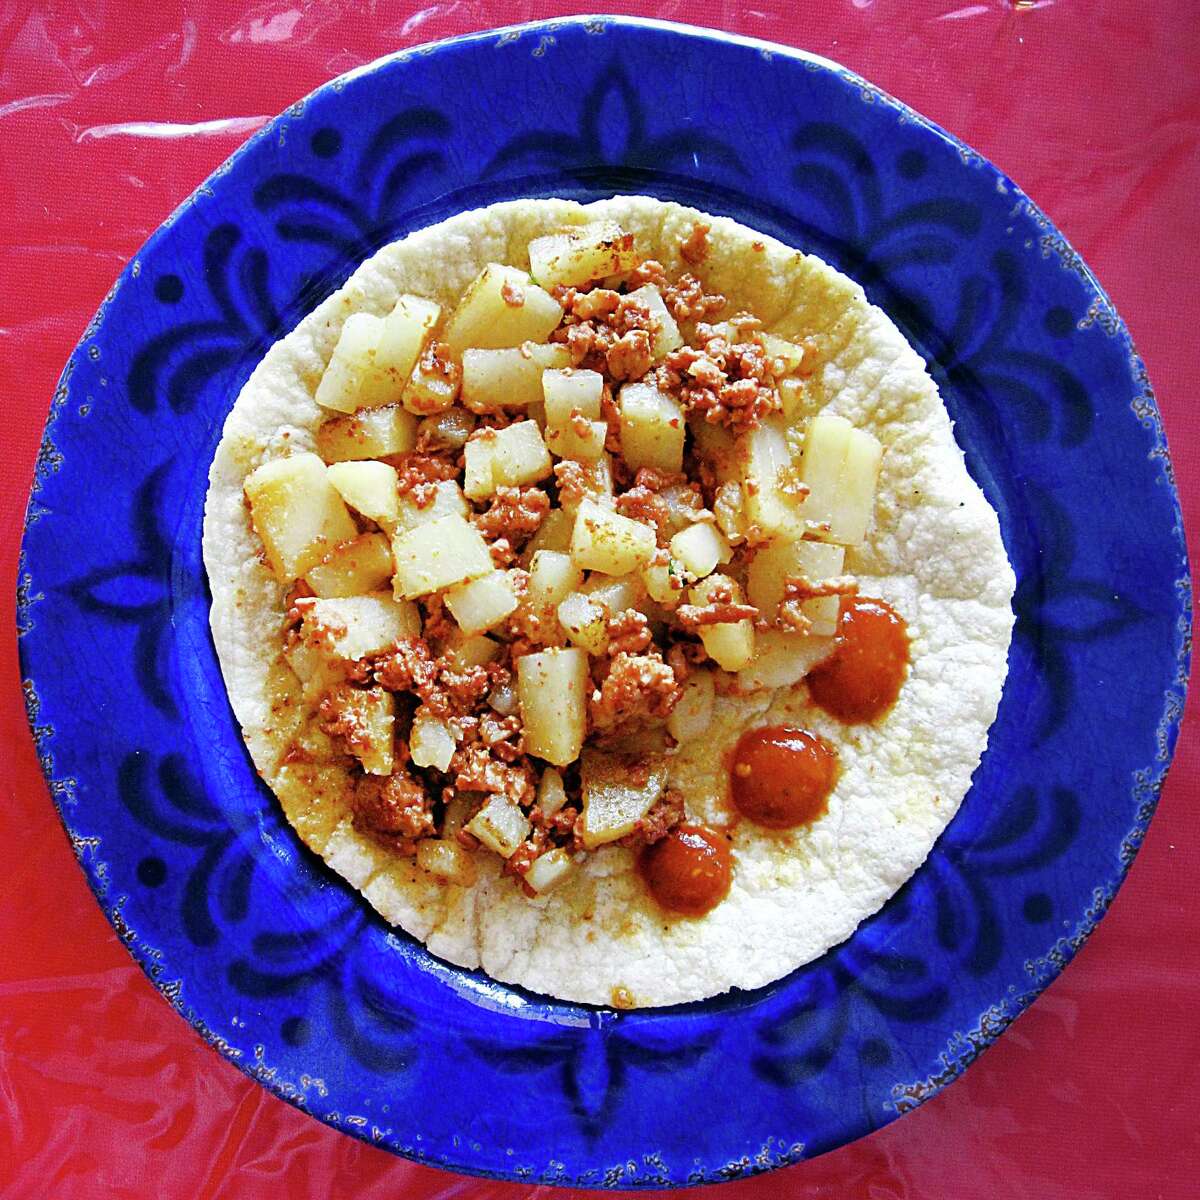 Chorizo and potato taco on a handmade corn tortilla from Taqueria Rello.